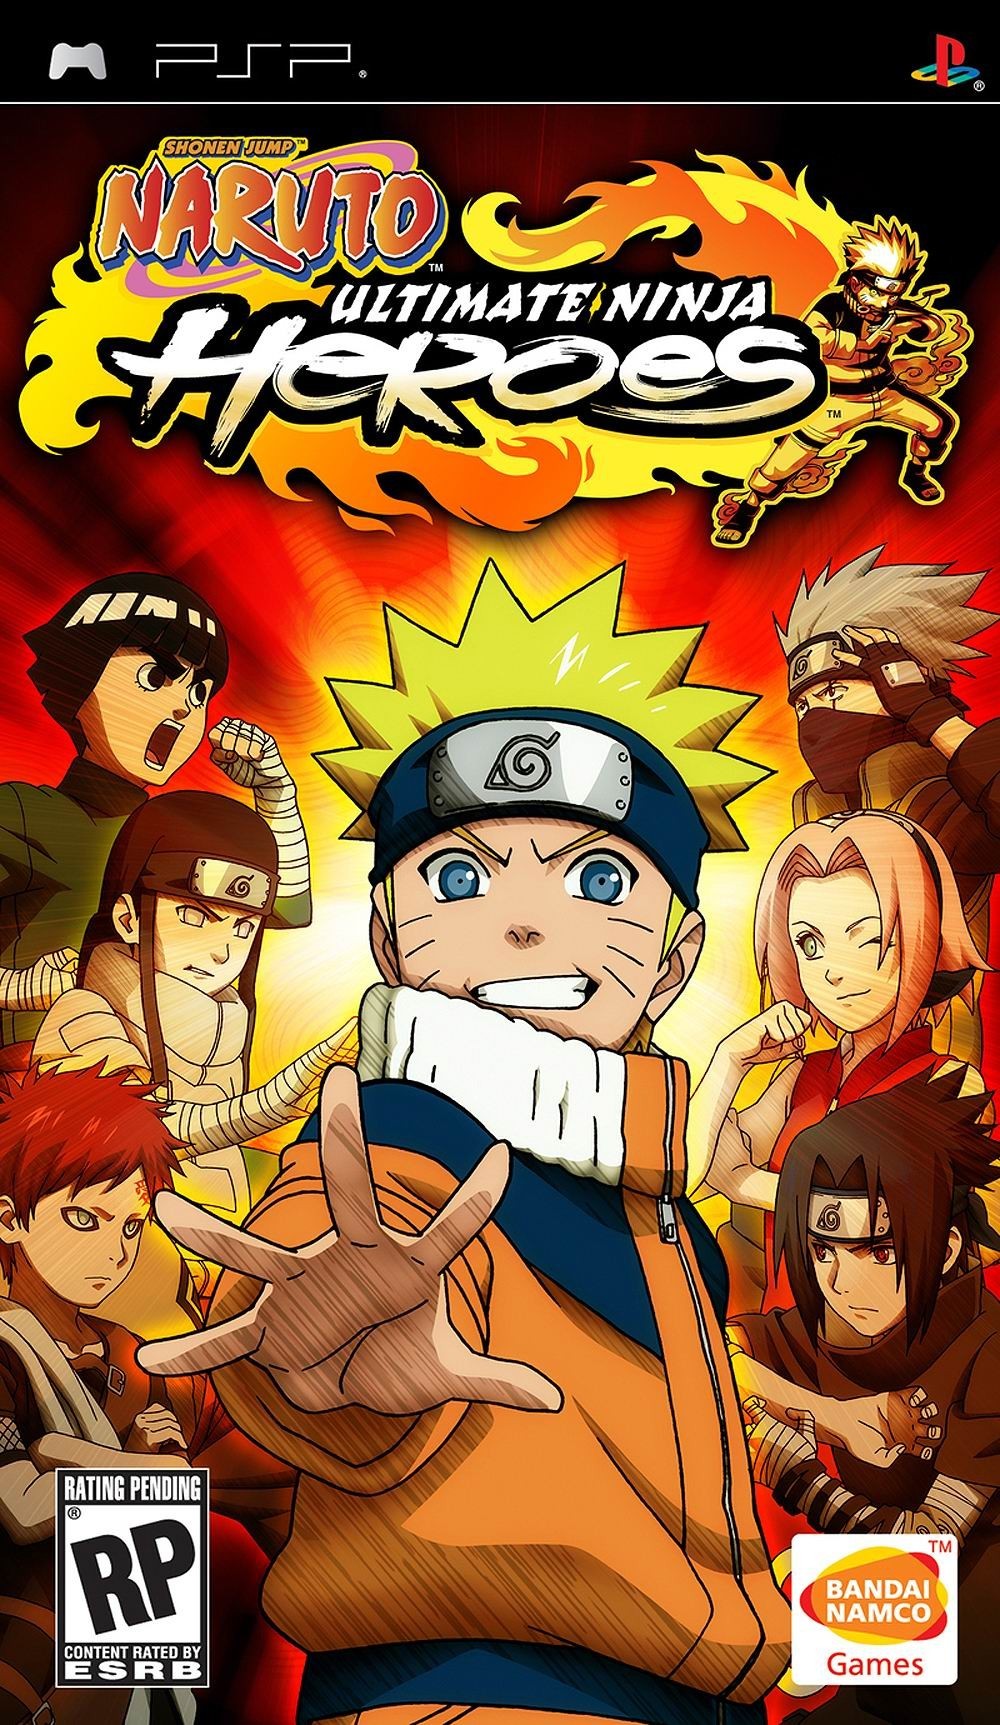 naruto ultimate ninja heroes 4 release date